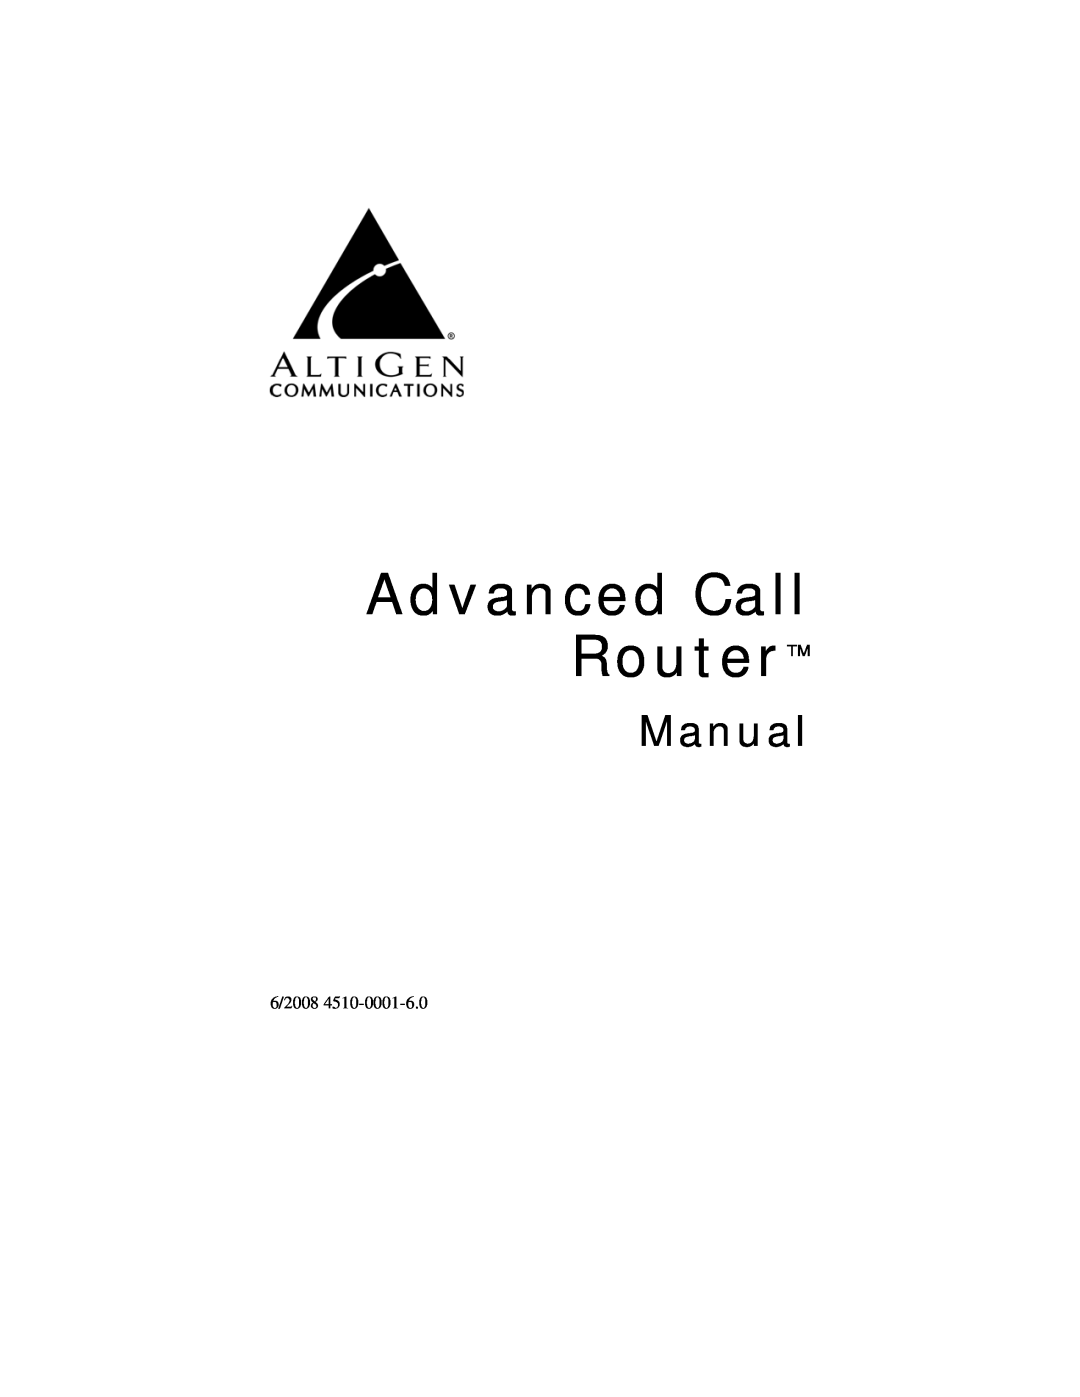 AltiGen comm 6/2008 4510-0001-6.0 manual Advanced Call Router, Manual 